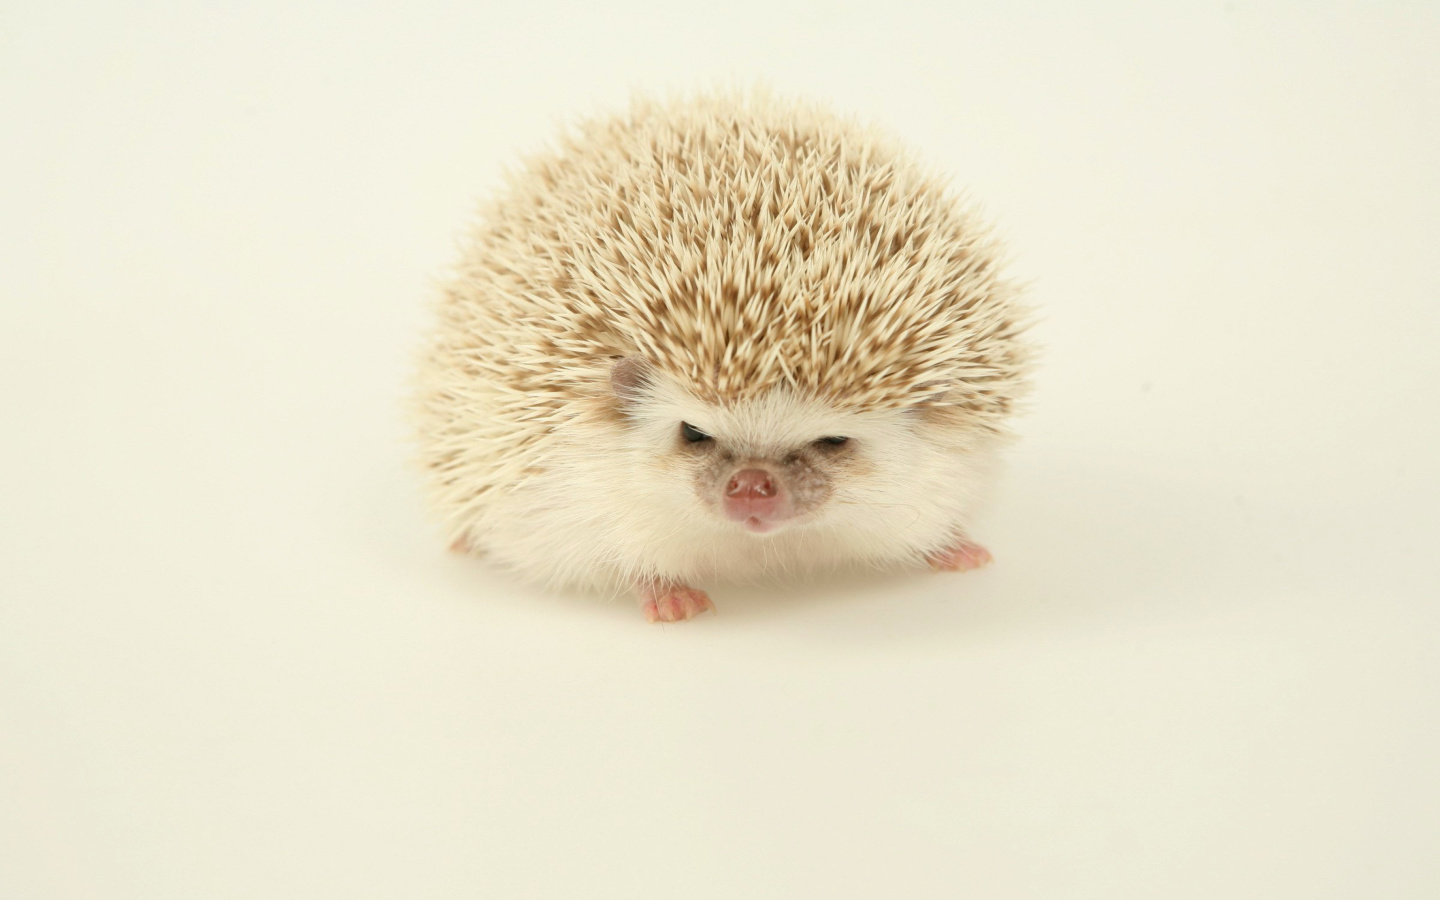 Evil hedgehog wallpaper 1440x900